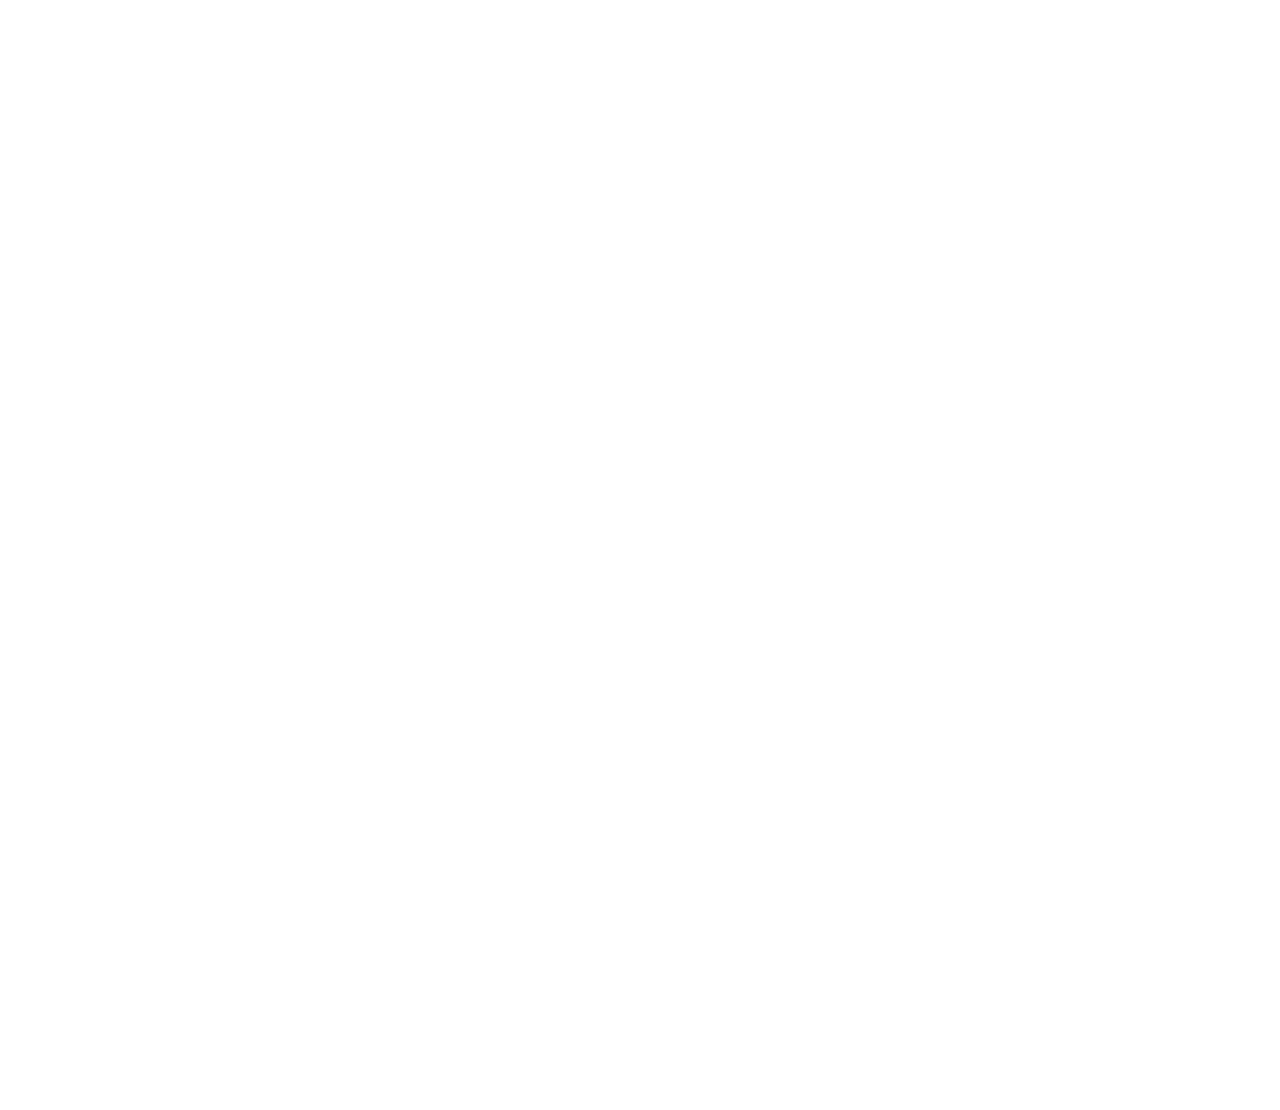 BMARES's web page